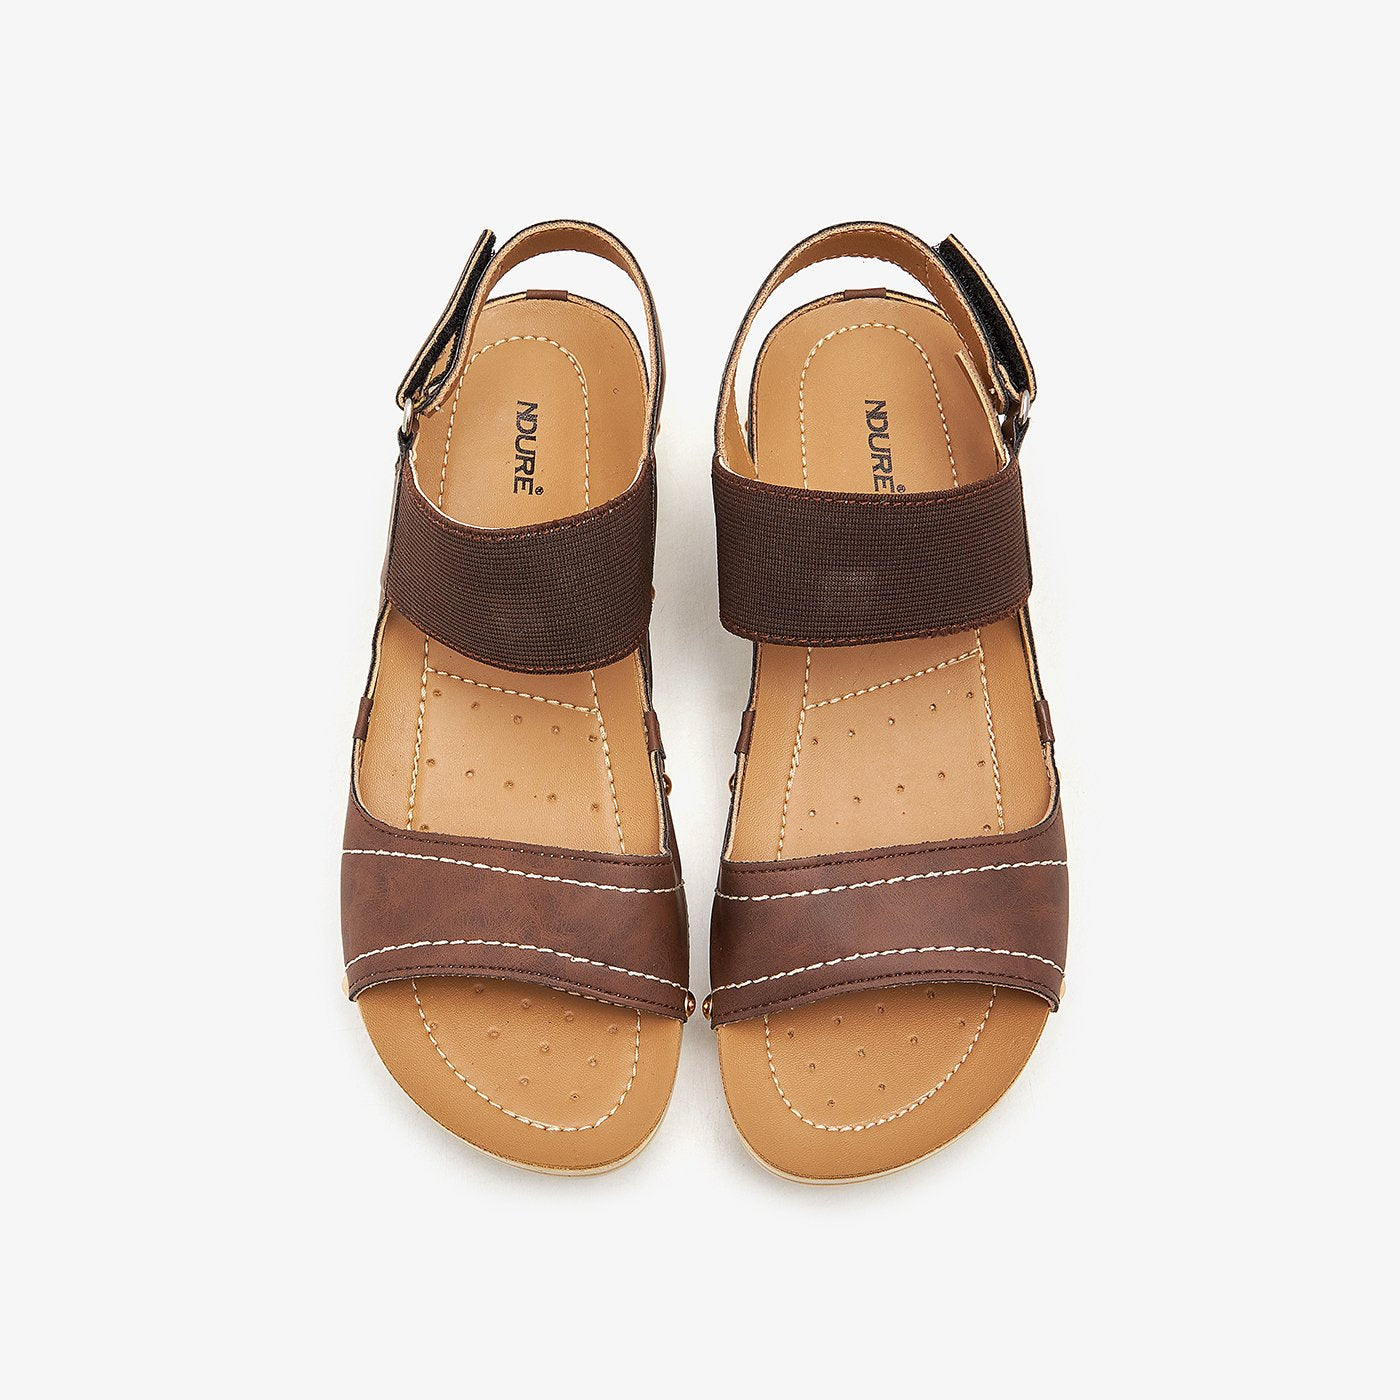 Double Strap Comfy Sandals